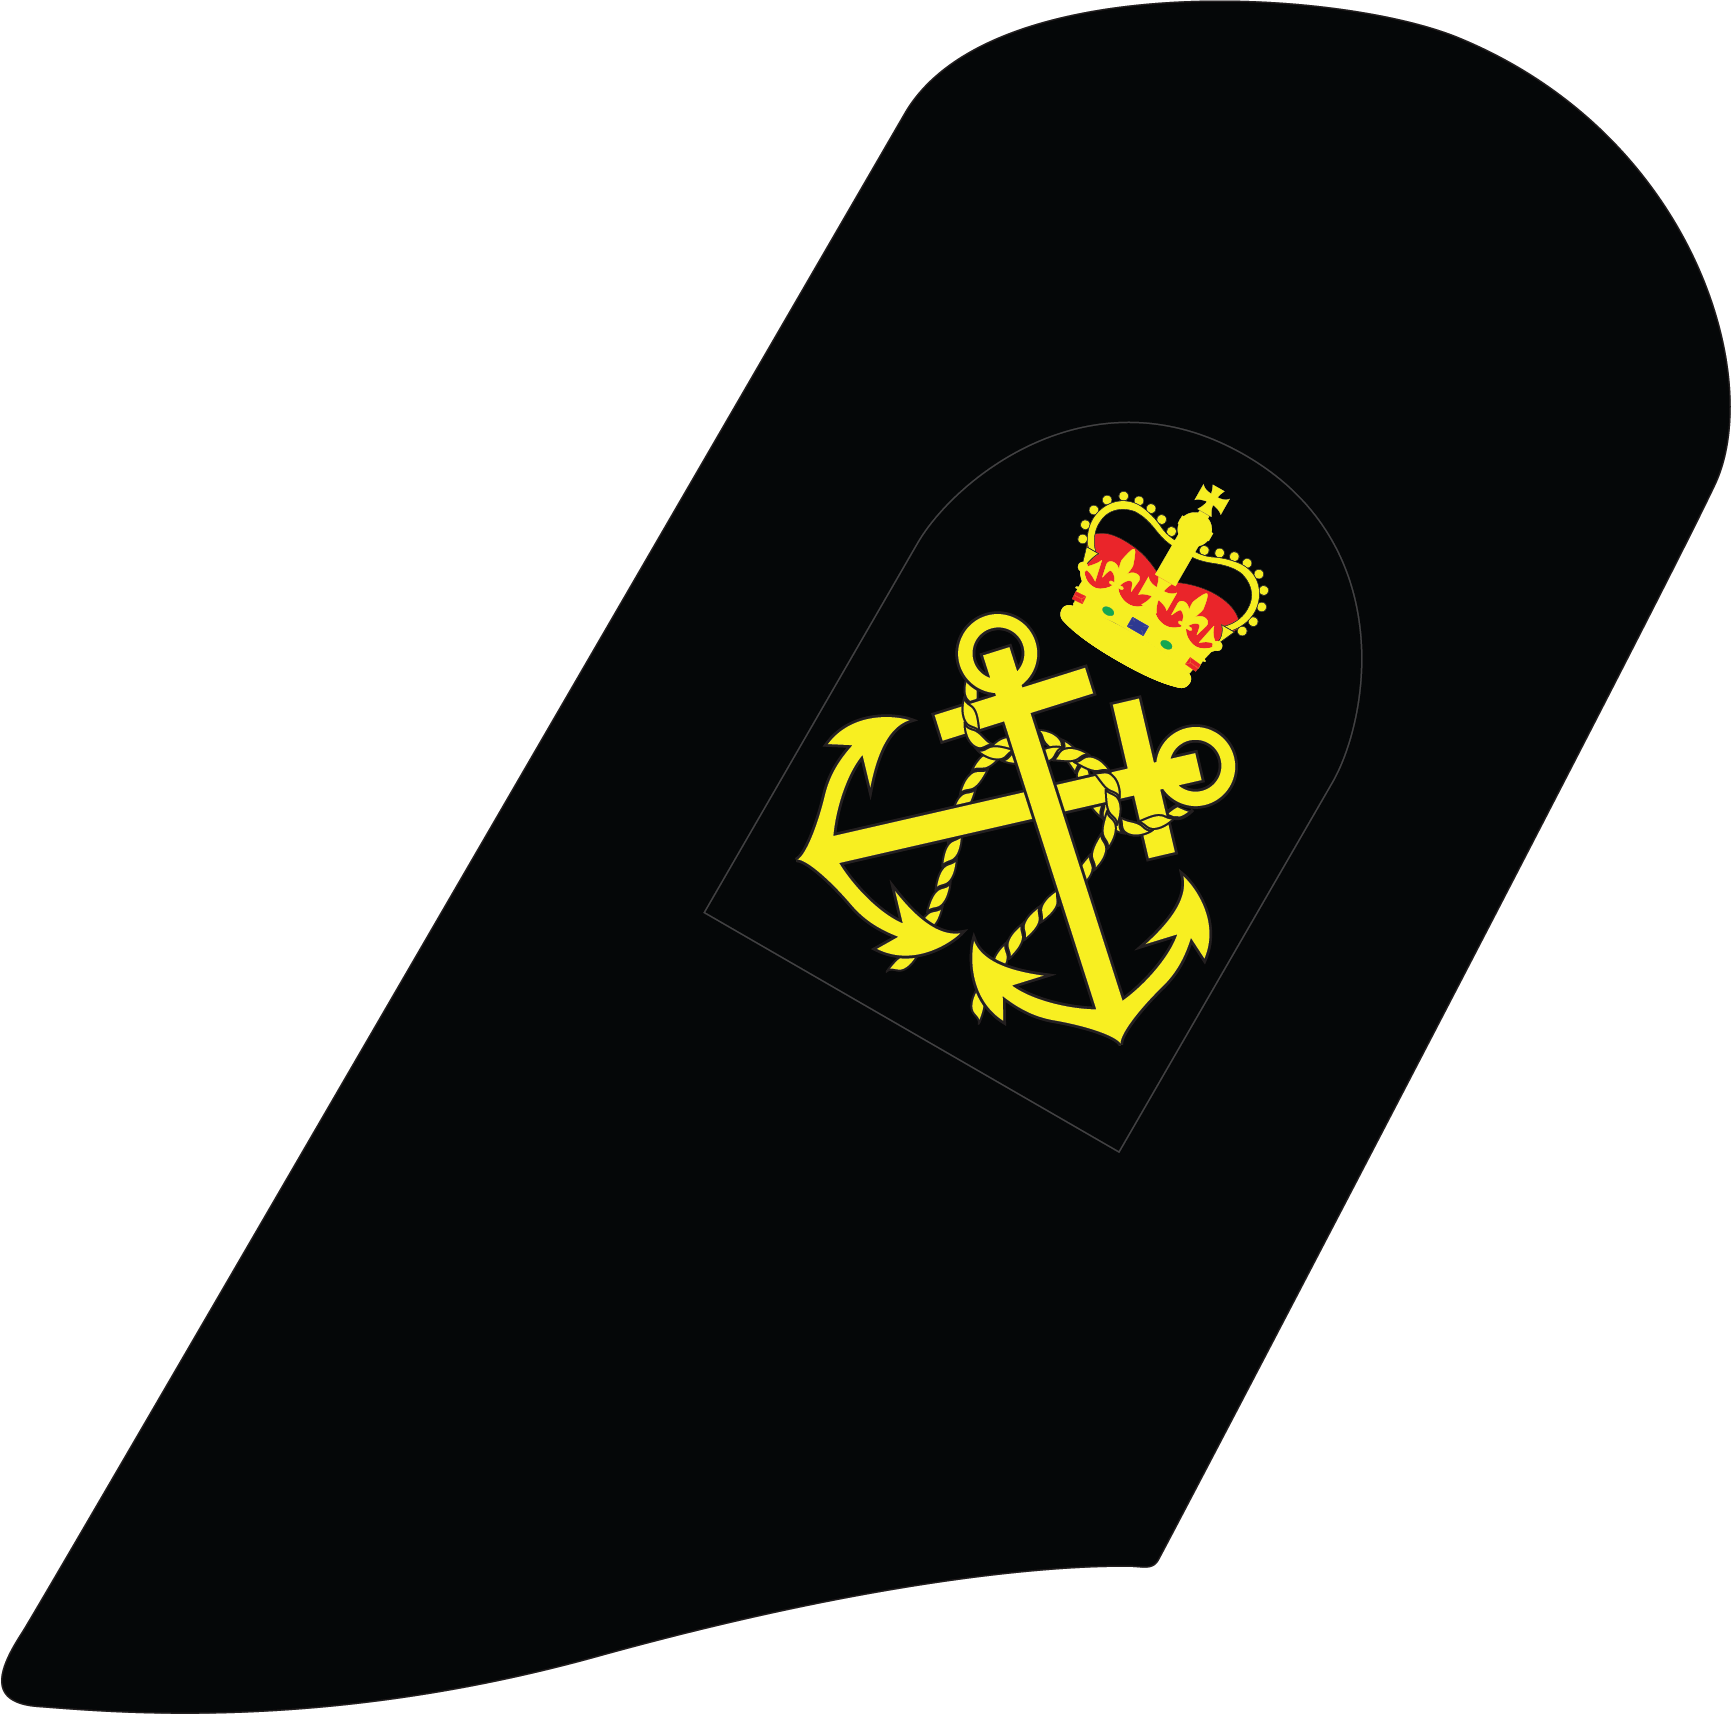 Nzcf Scc Cdt-5 Fb Pocdt - Emblem Clipart (1731x1714), Png Download